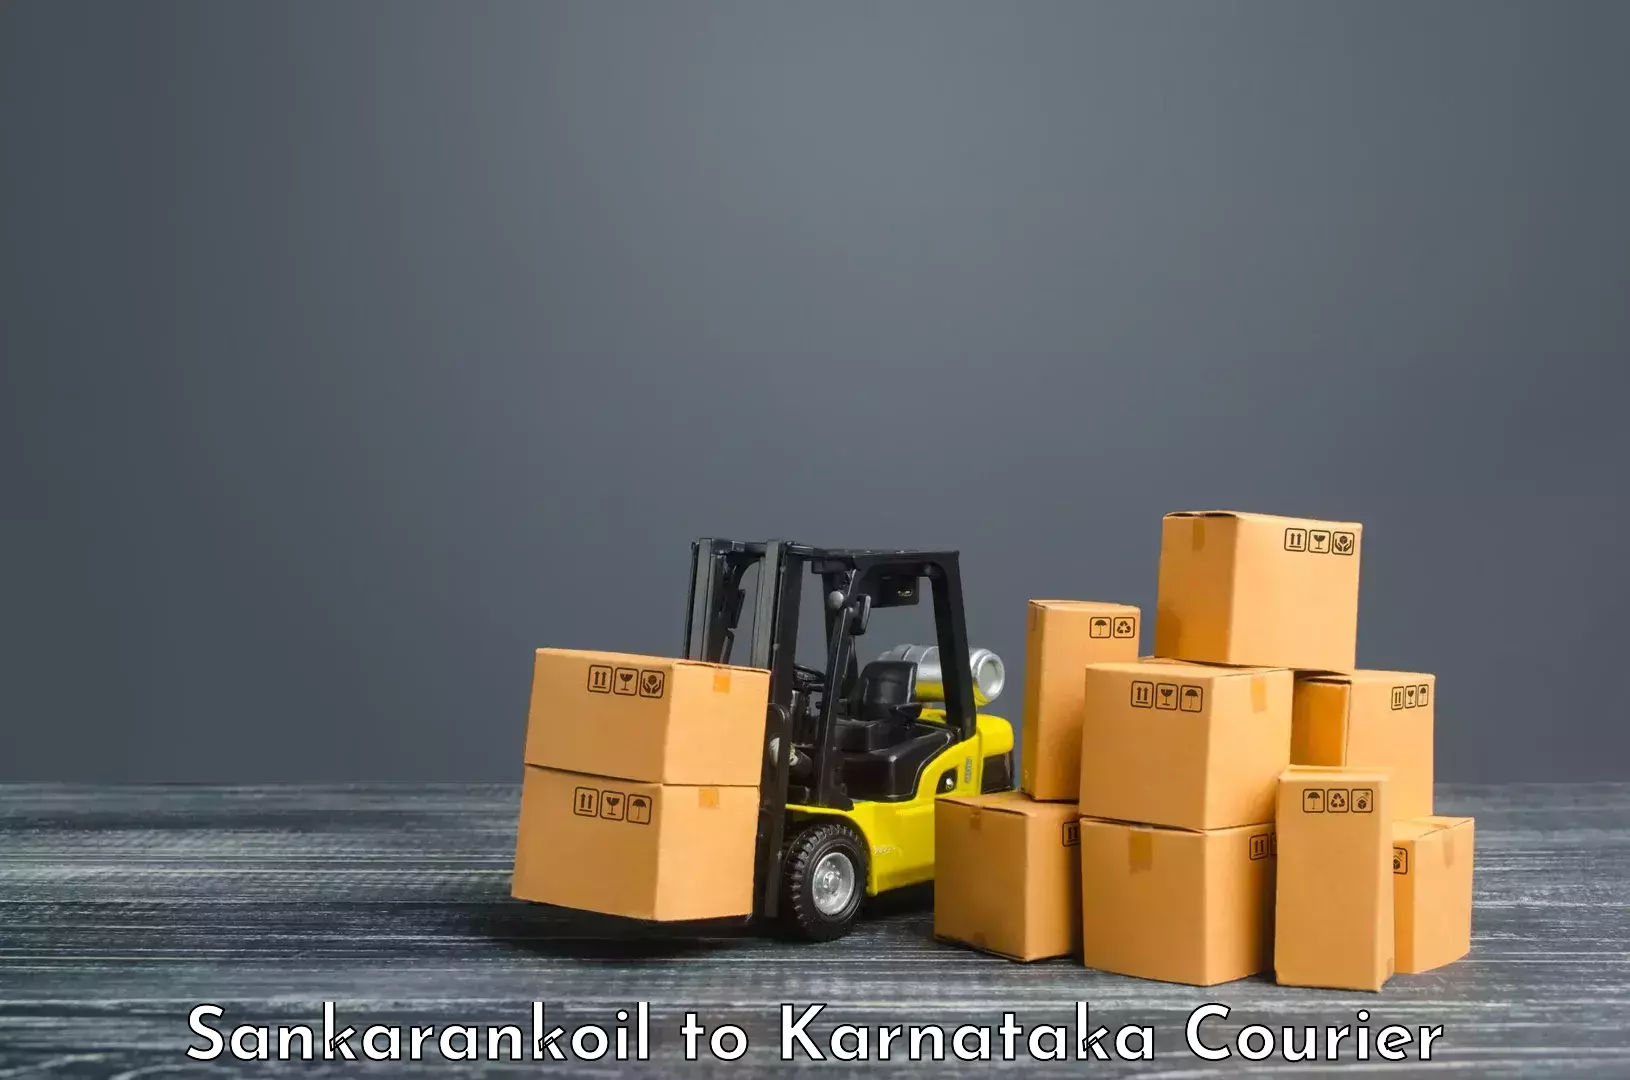 Reliable logistics providers Sankarankoil to Gurmatkal